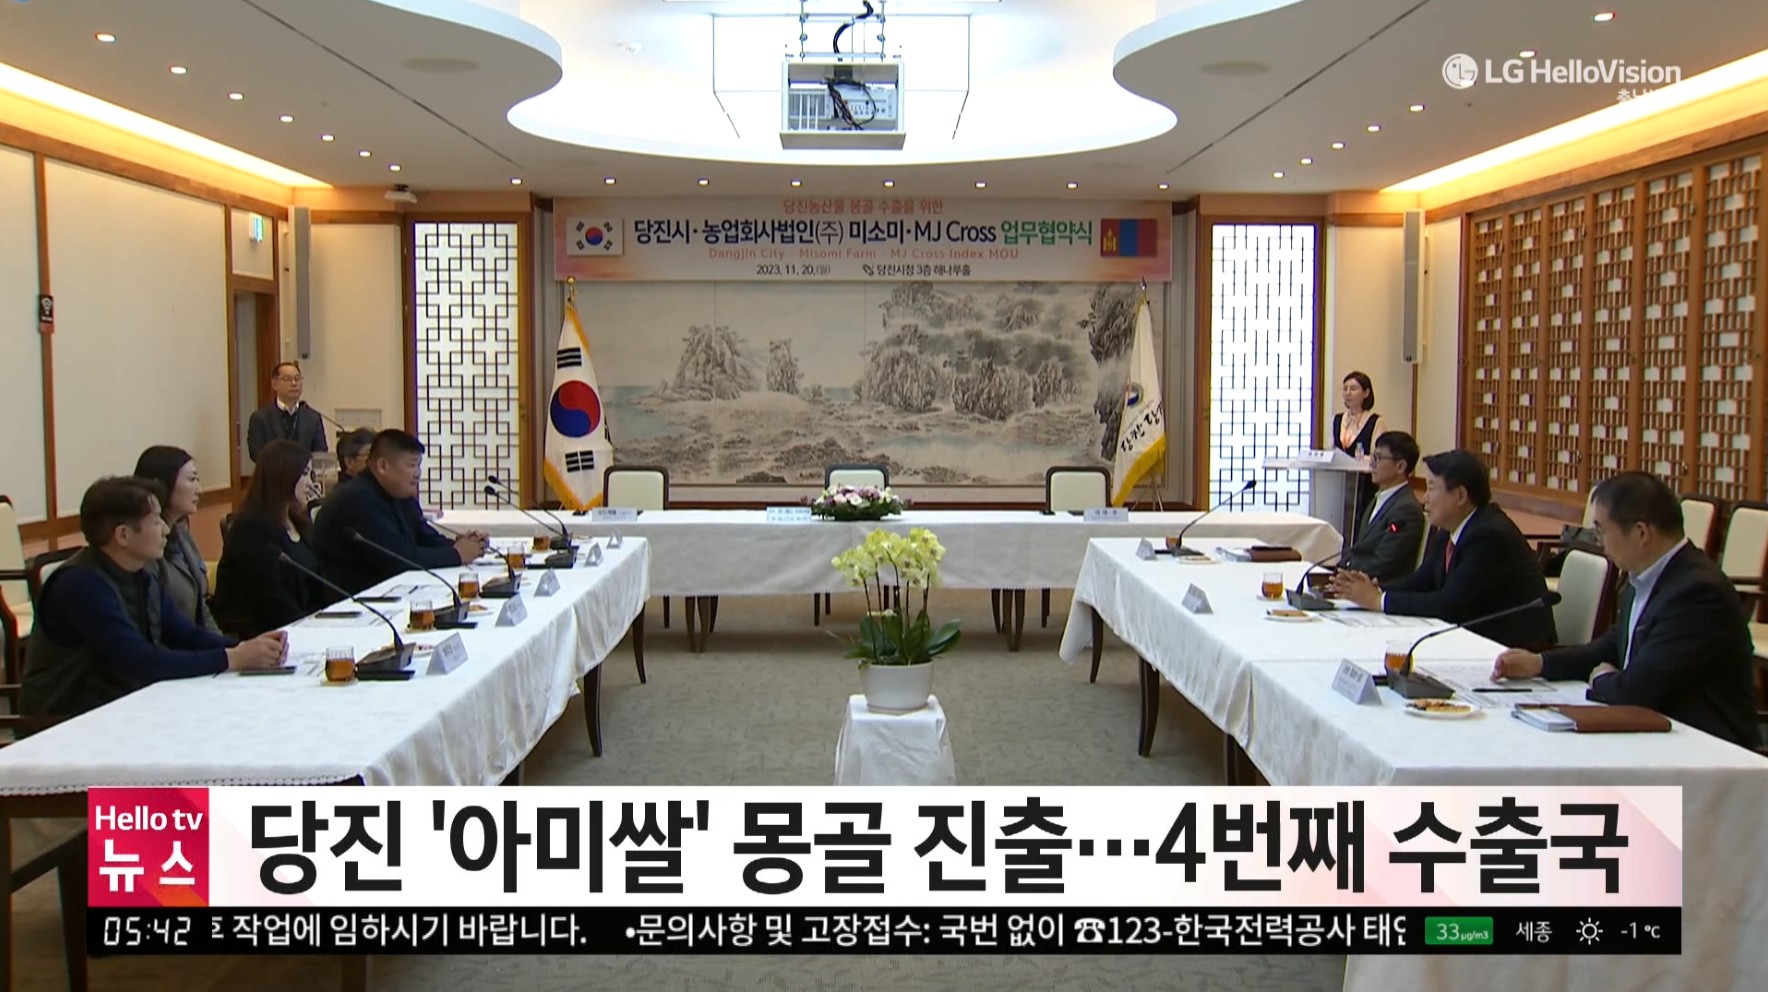 당진시 아미쌀 몽골수출 협약_충남방송뉴스보도11.22